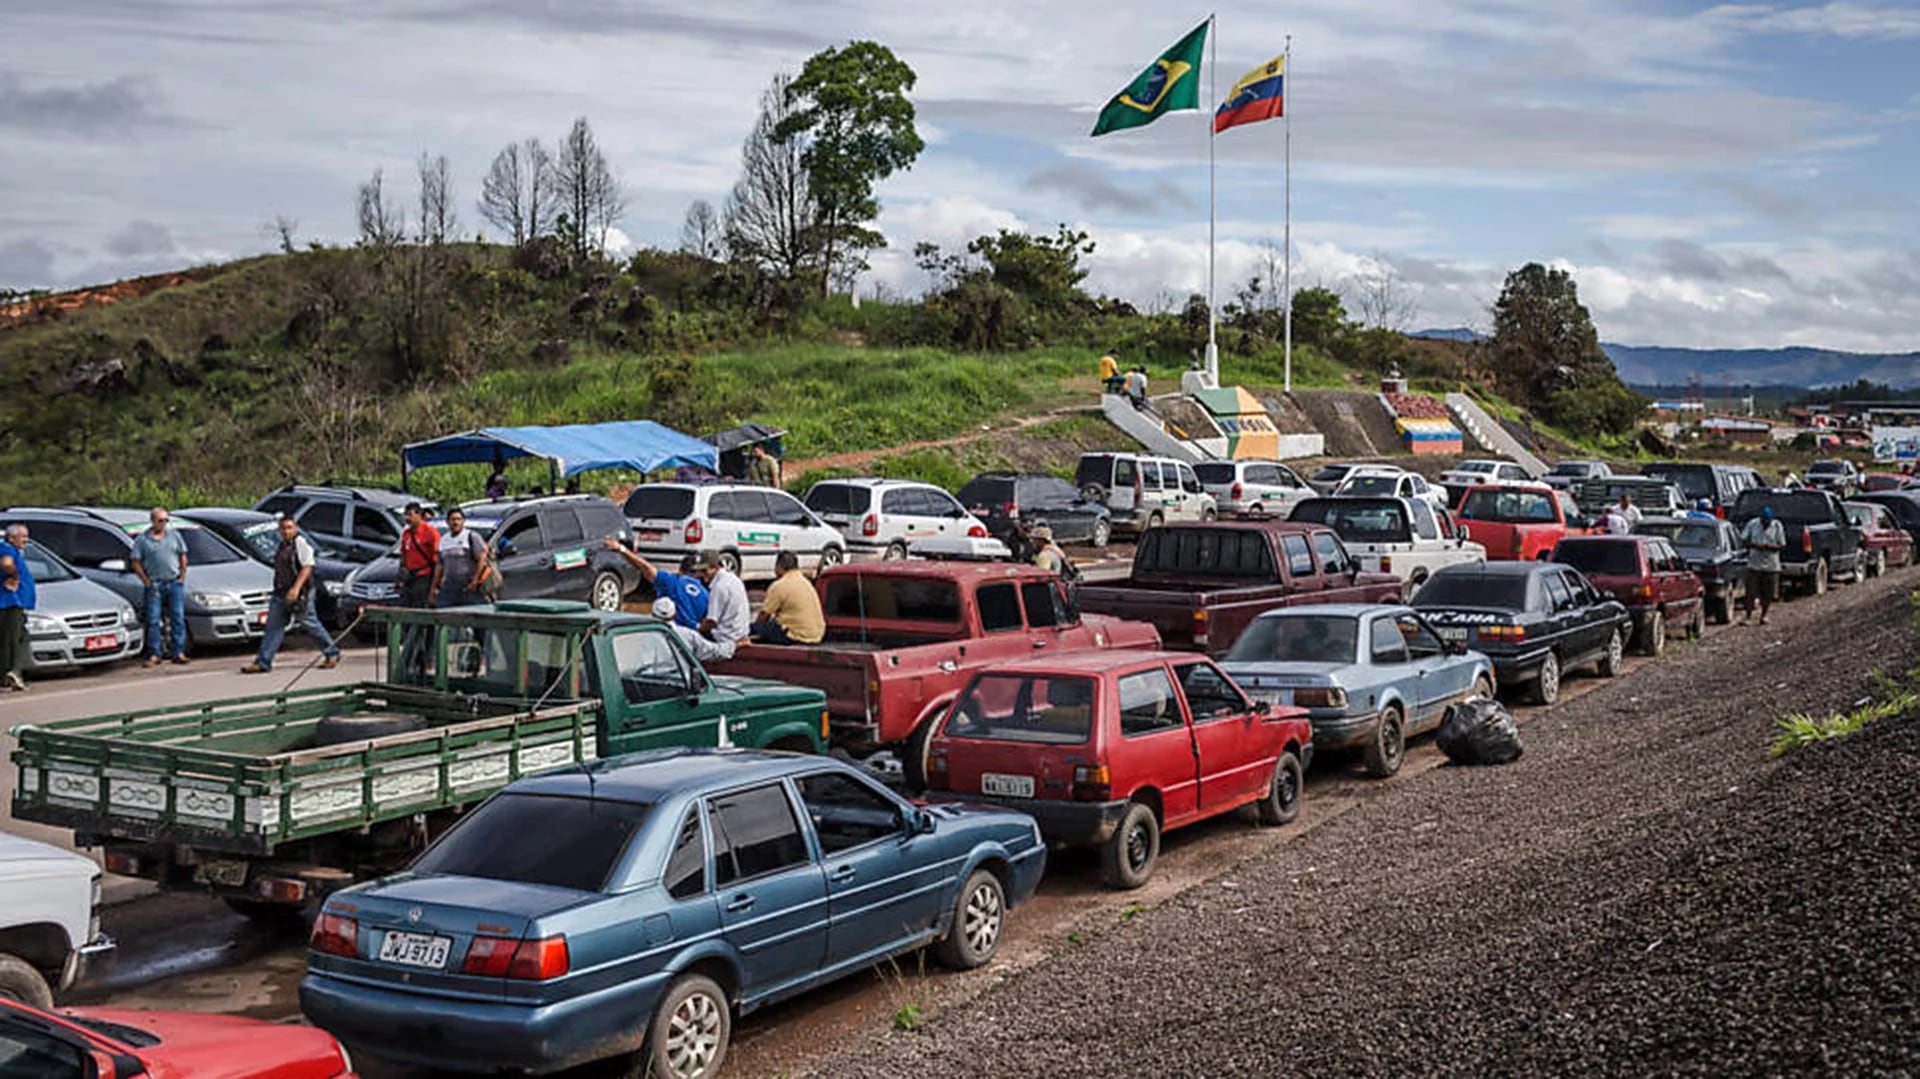 Miles de venezolanos cruzaron al estado brasileño de Roraima en busca de alimentos. Por la escasez en su país, no son pocos los que eligen atravesar las fronteras (Avener Prado/Folhapress)